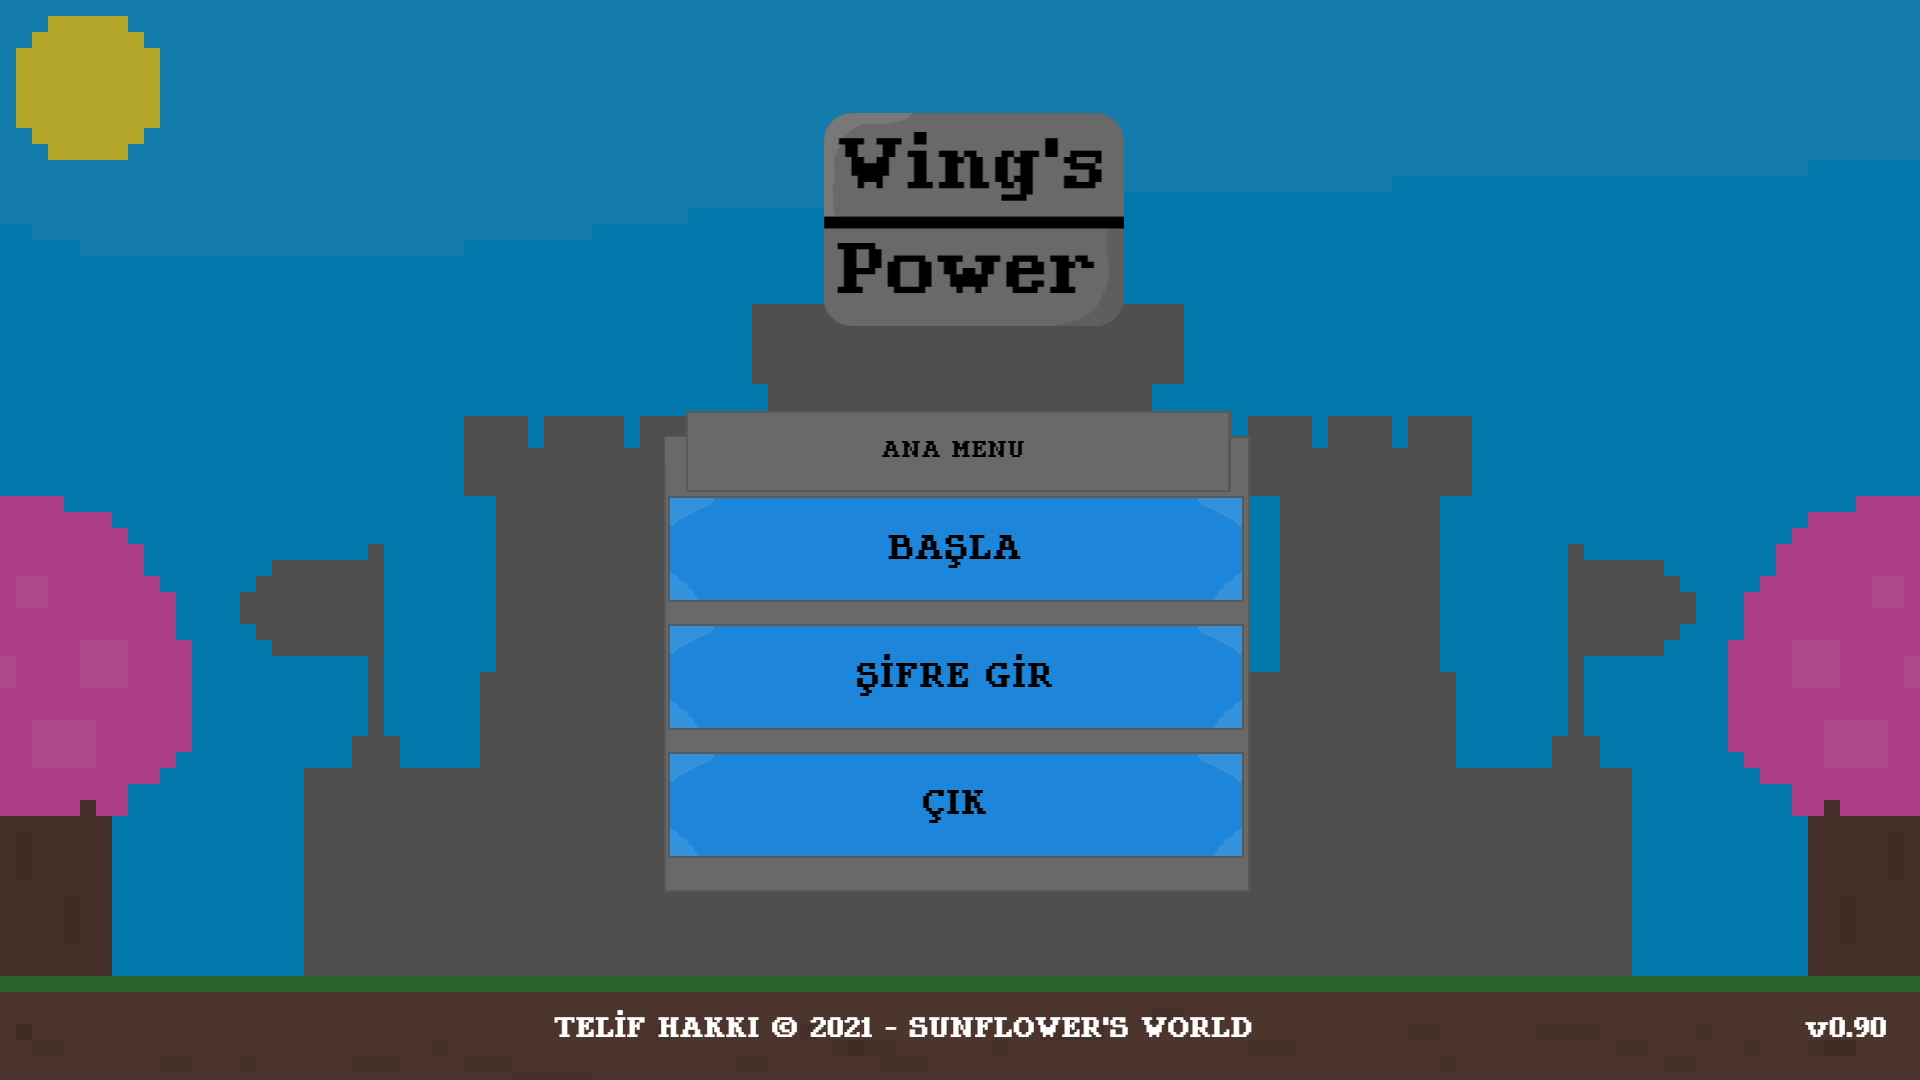 wings-power-menu-08.03.2021.png